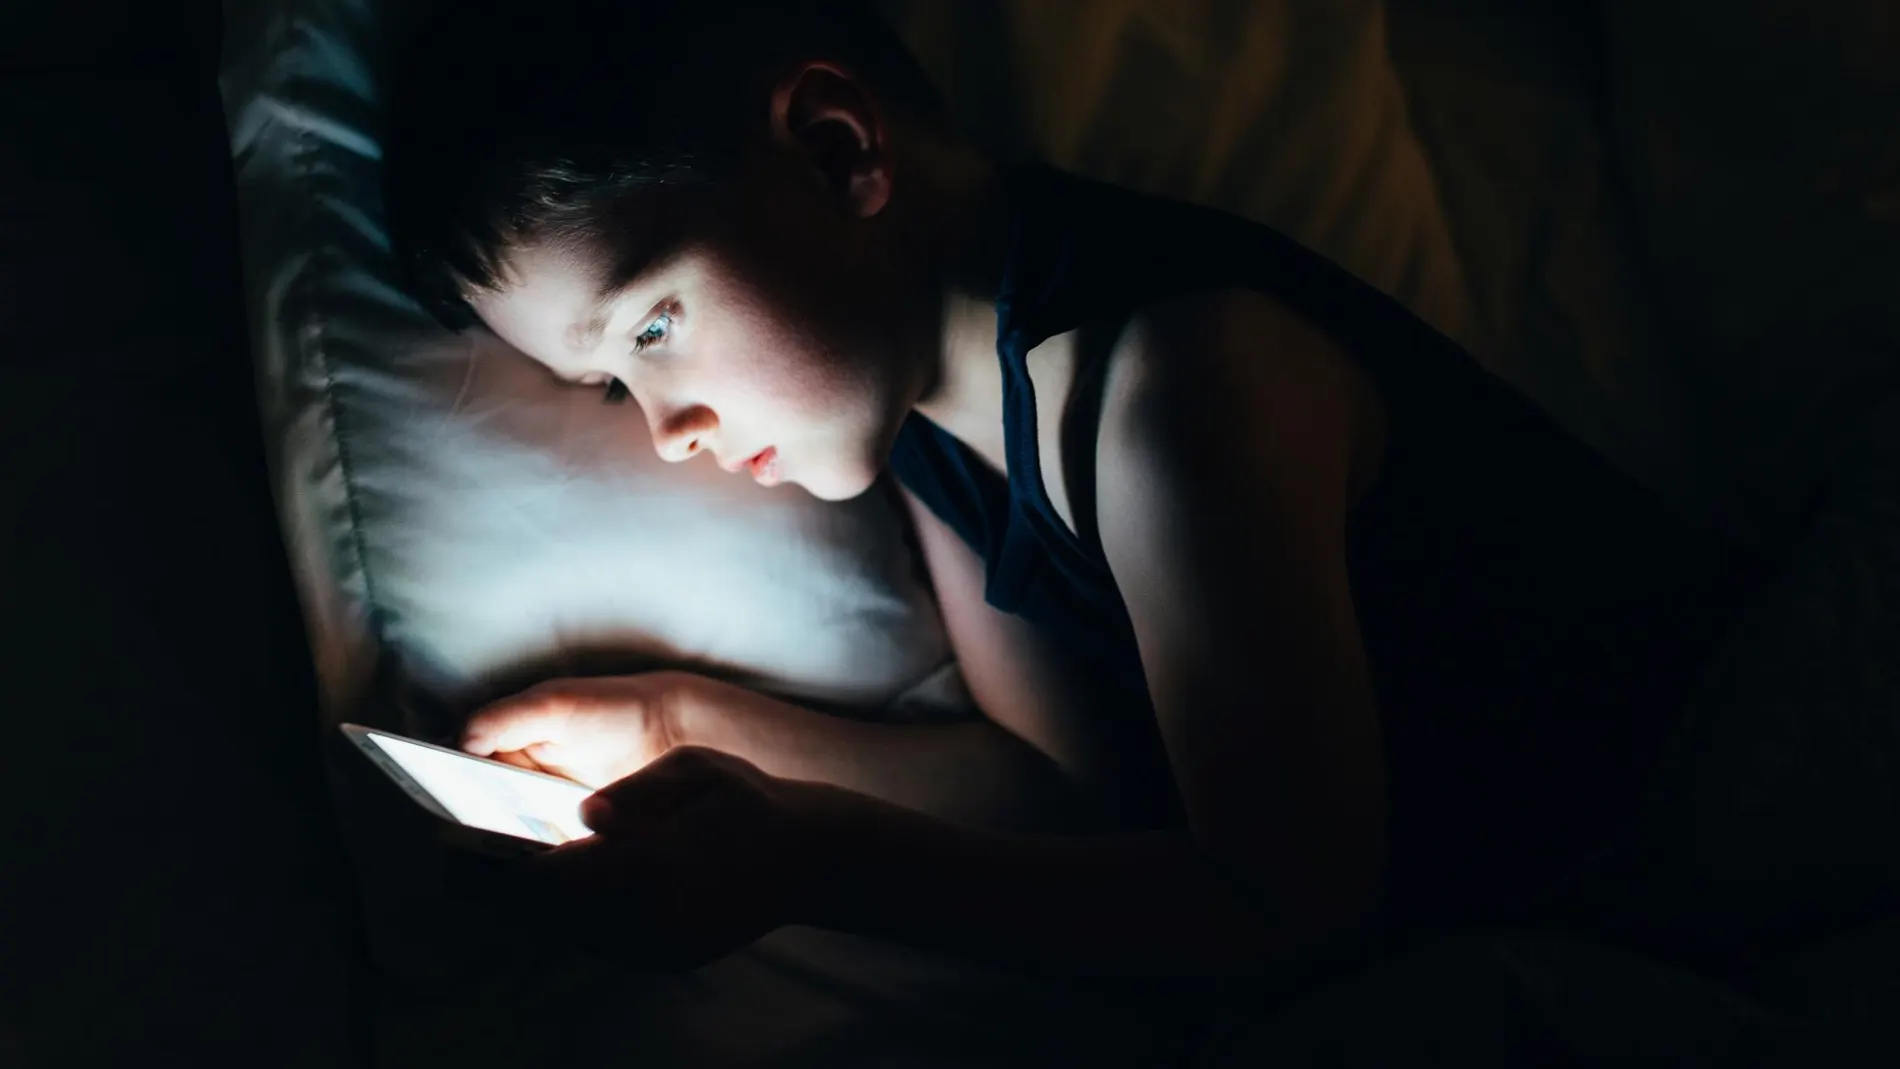 La Sociedad Española del Sueño recomienda 10 horas de sueño al día para niños de entre 6 y 12 años